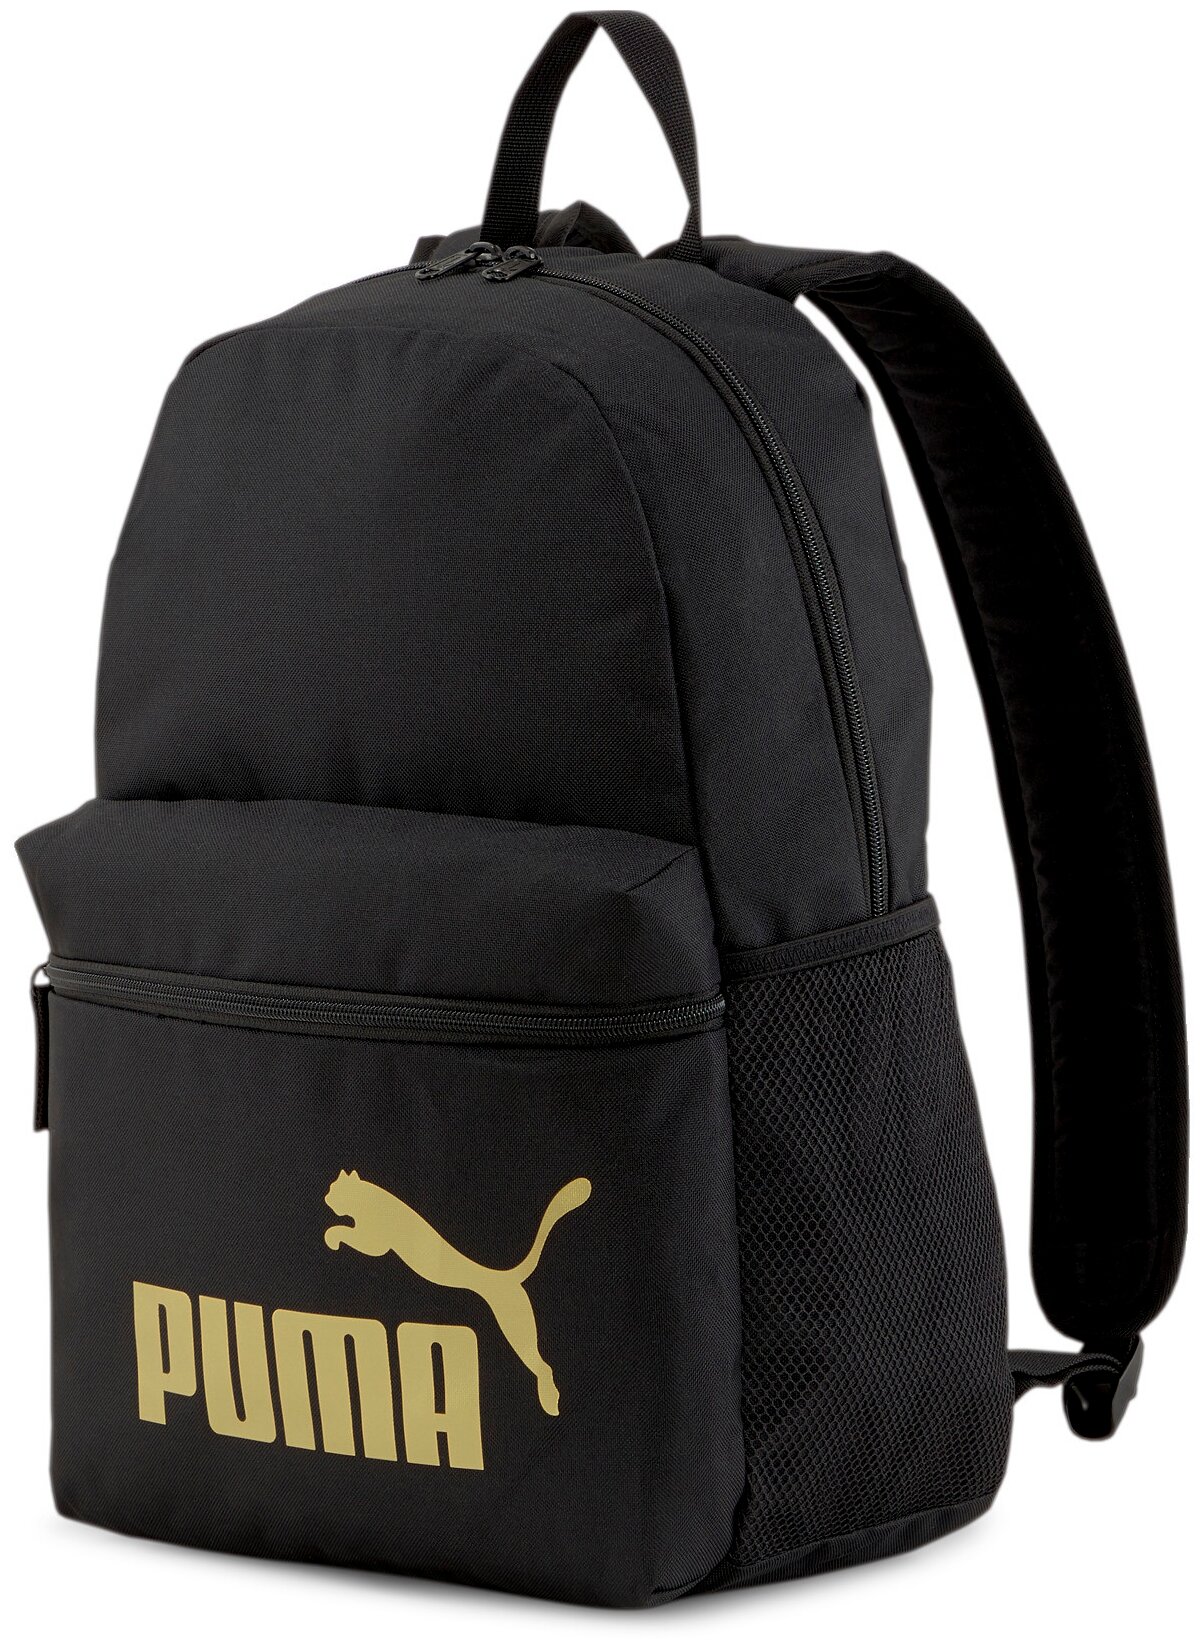 Городской рюкзак PUMA Phase, Black-Golden logo